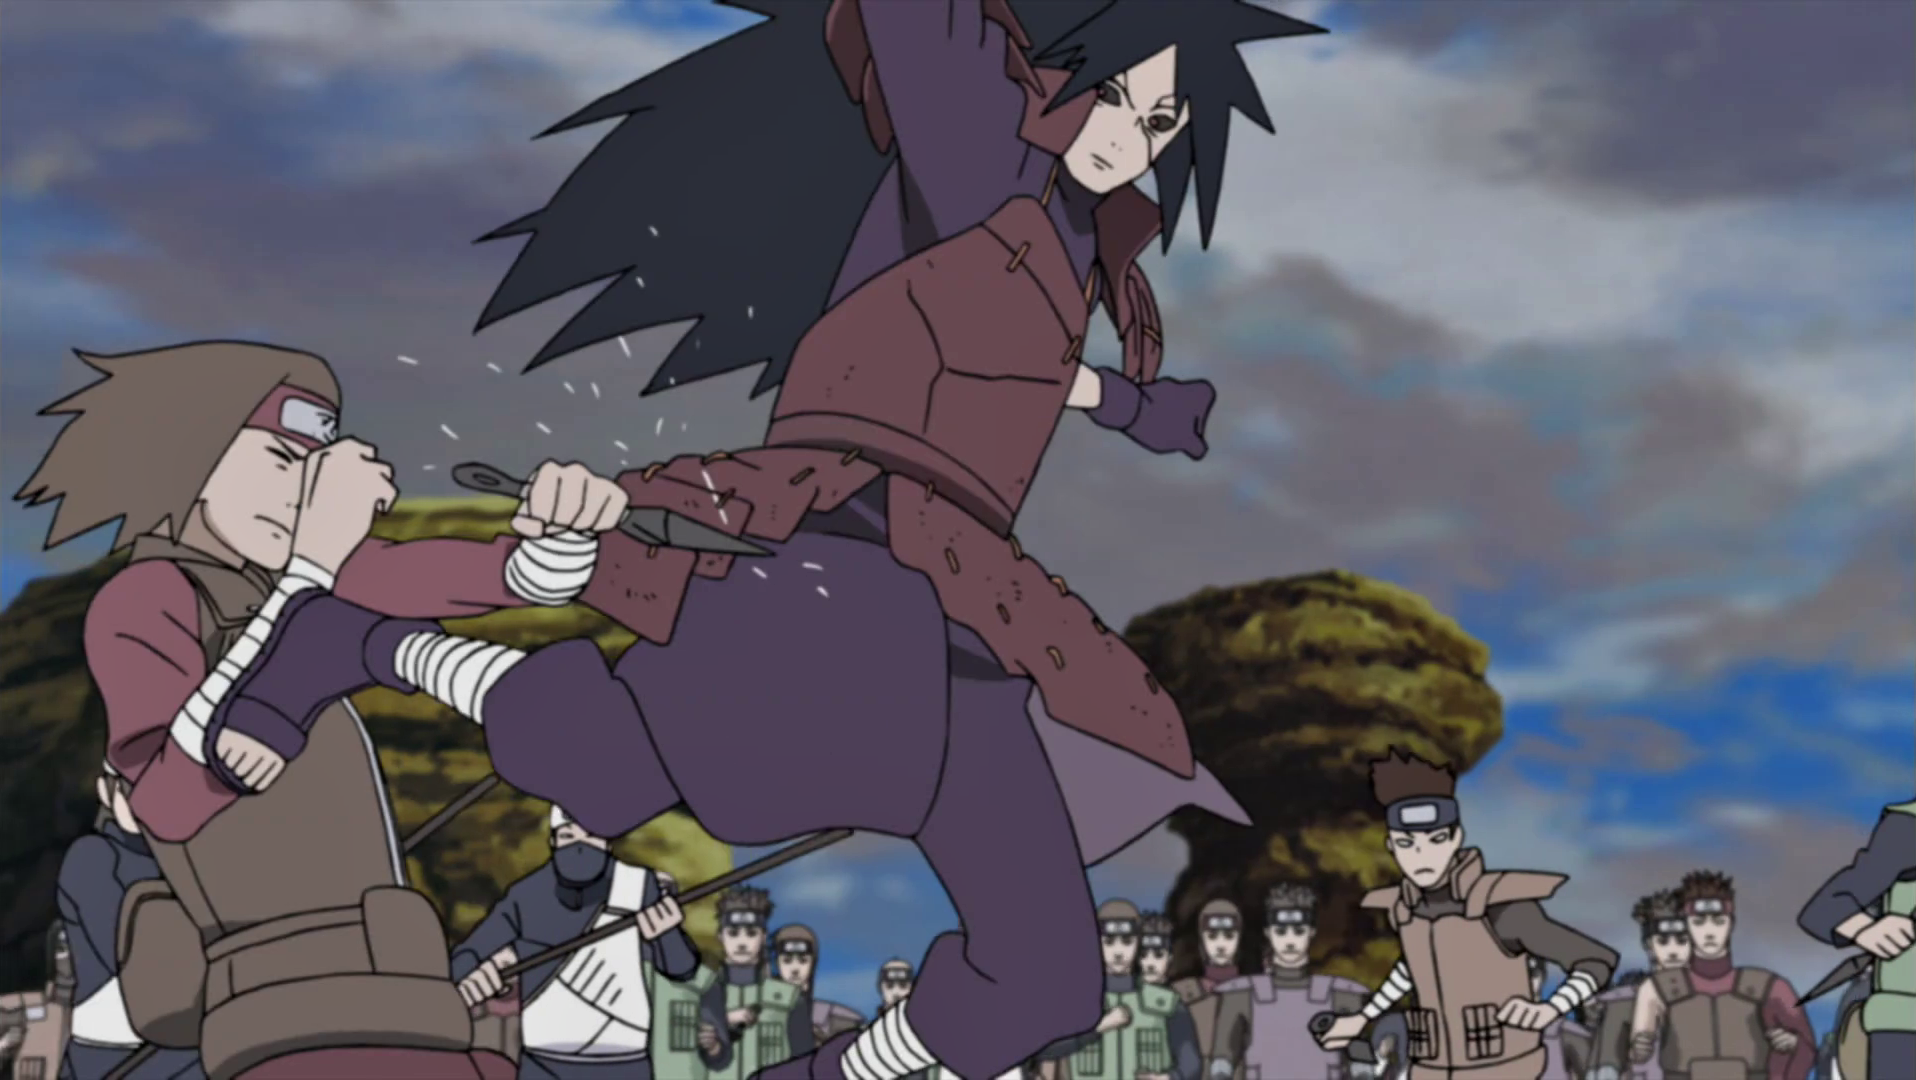 Desenhando Naruto e Sasuke vs Madara - Naruto Shippuden  Desenhão do Sasuke,  Naruto e Madara em uma das últimas batalhas do anime! Umas das melhores  lutas da 4 grande guerra ninja